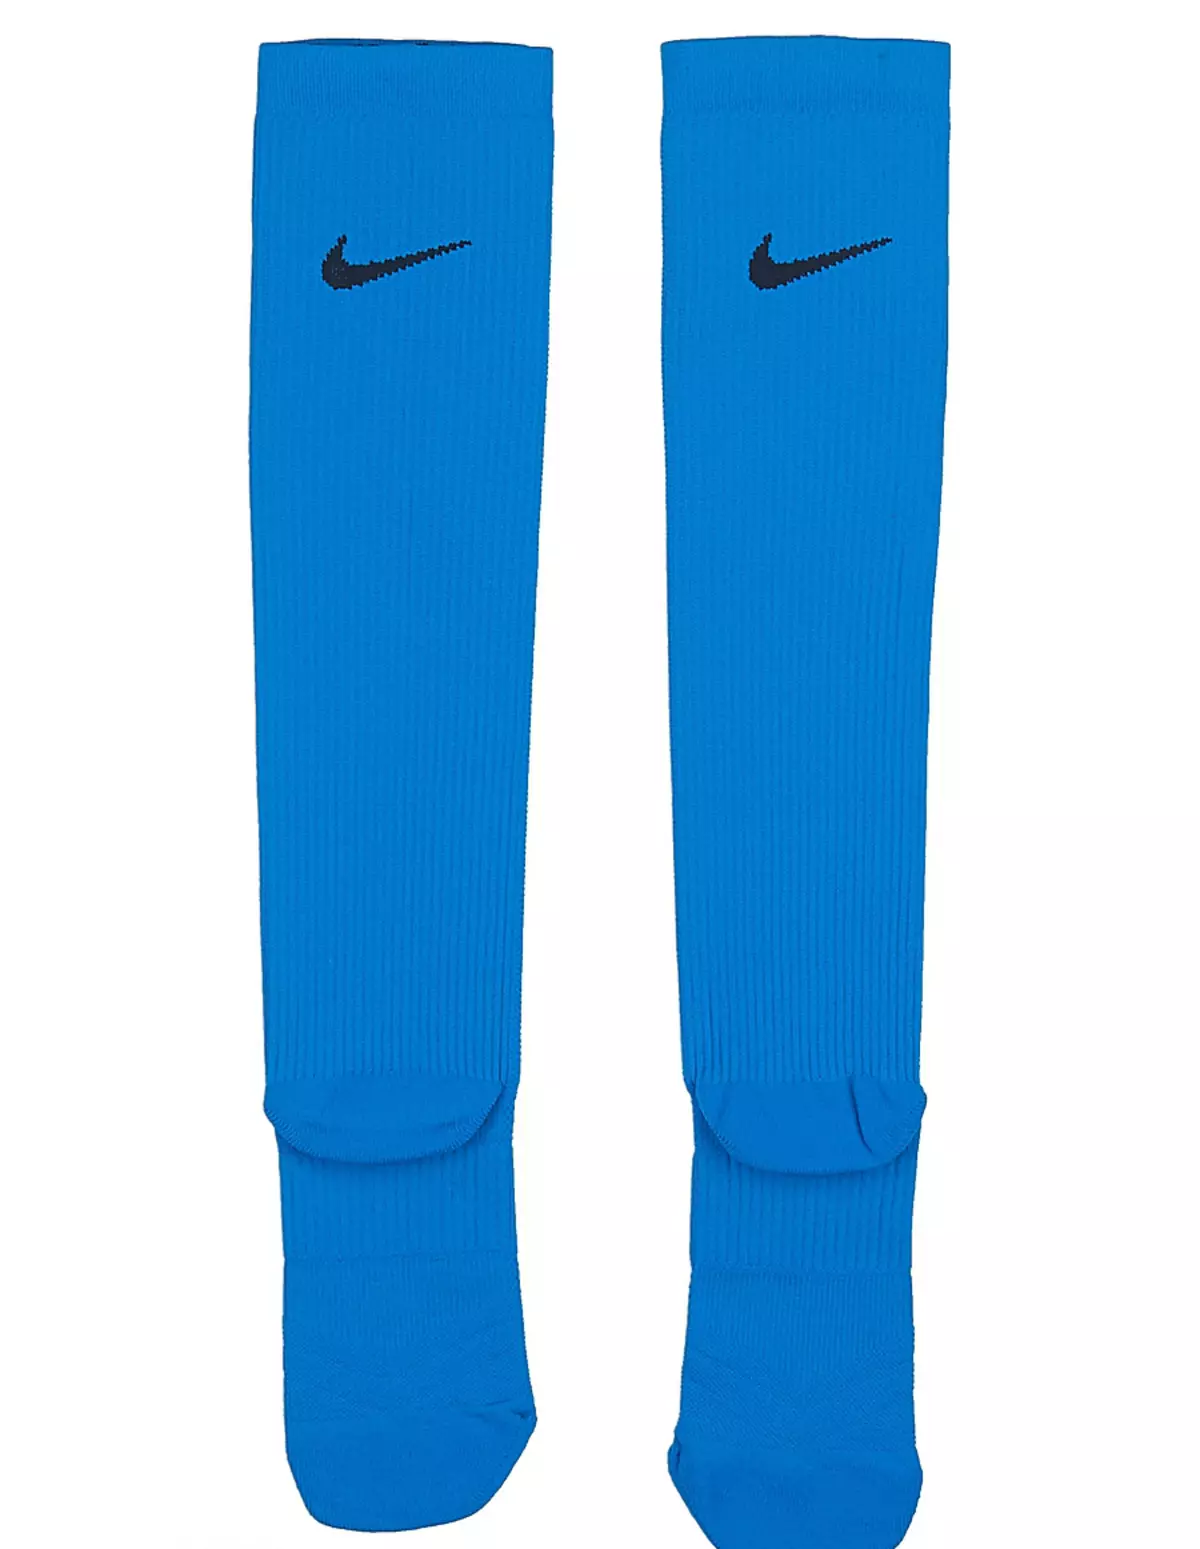 Nike Socks (48 پارچە رەسىم): ئاياللار تەنتەربىيە مودېللىرى 14939_13